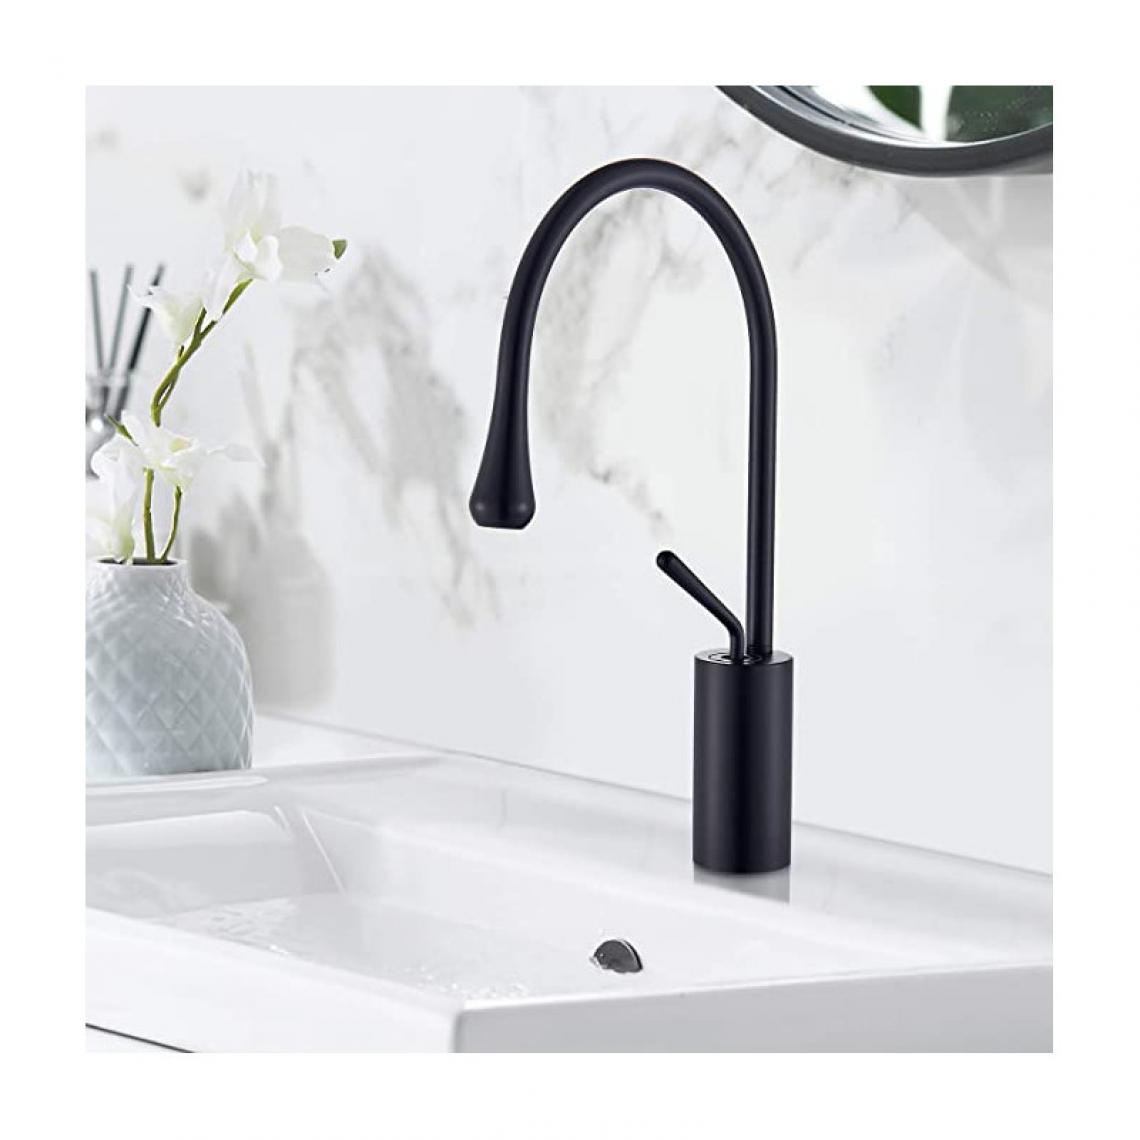 Bagnoclic - Mitigeur Joystick pour salle de bain ou cuisine, noir mat - Robinet de lavabo